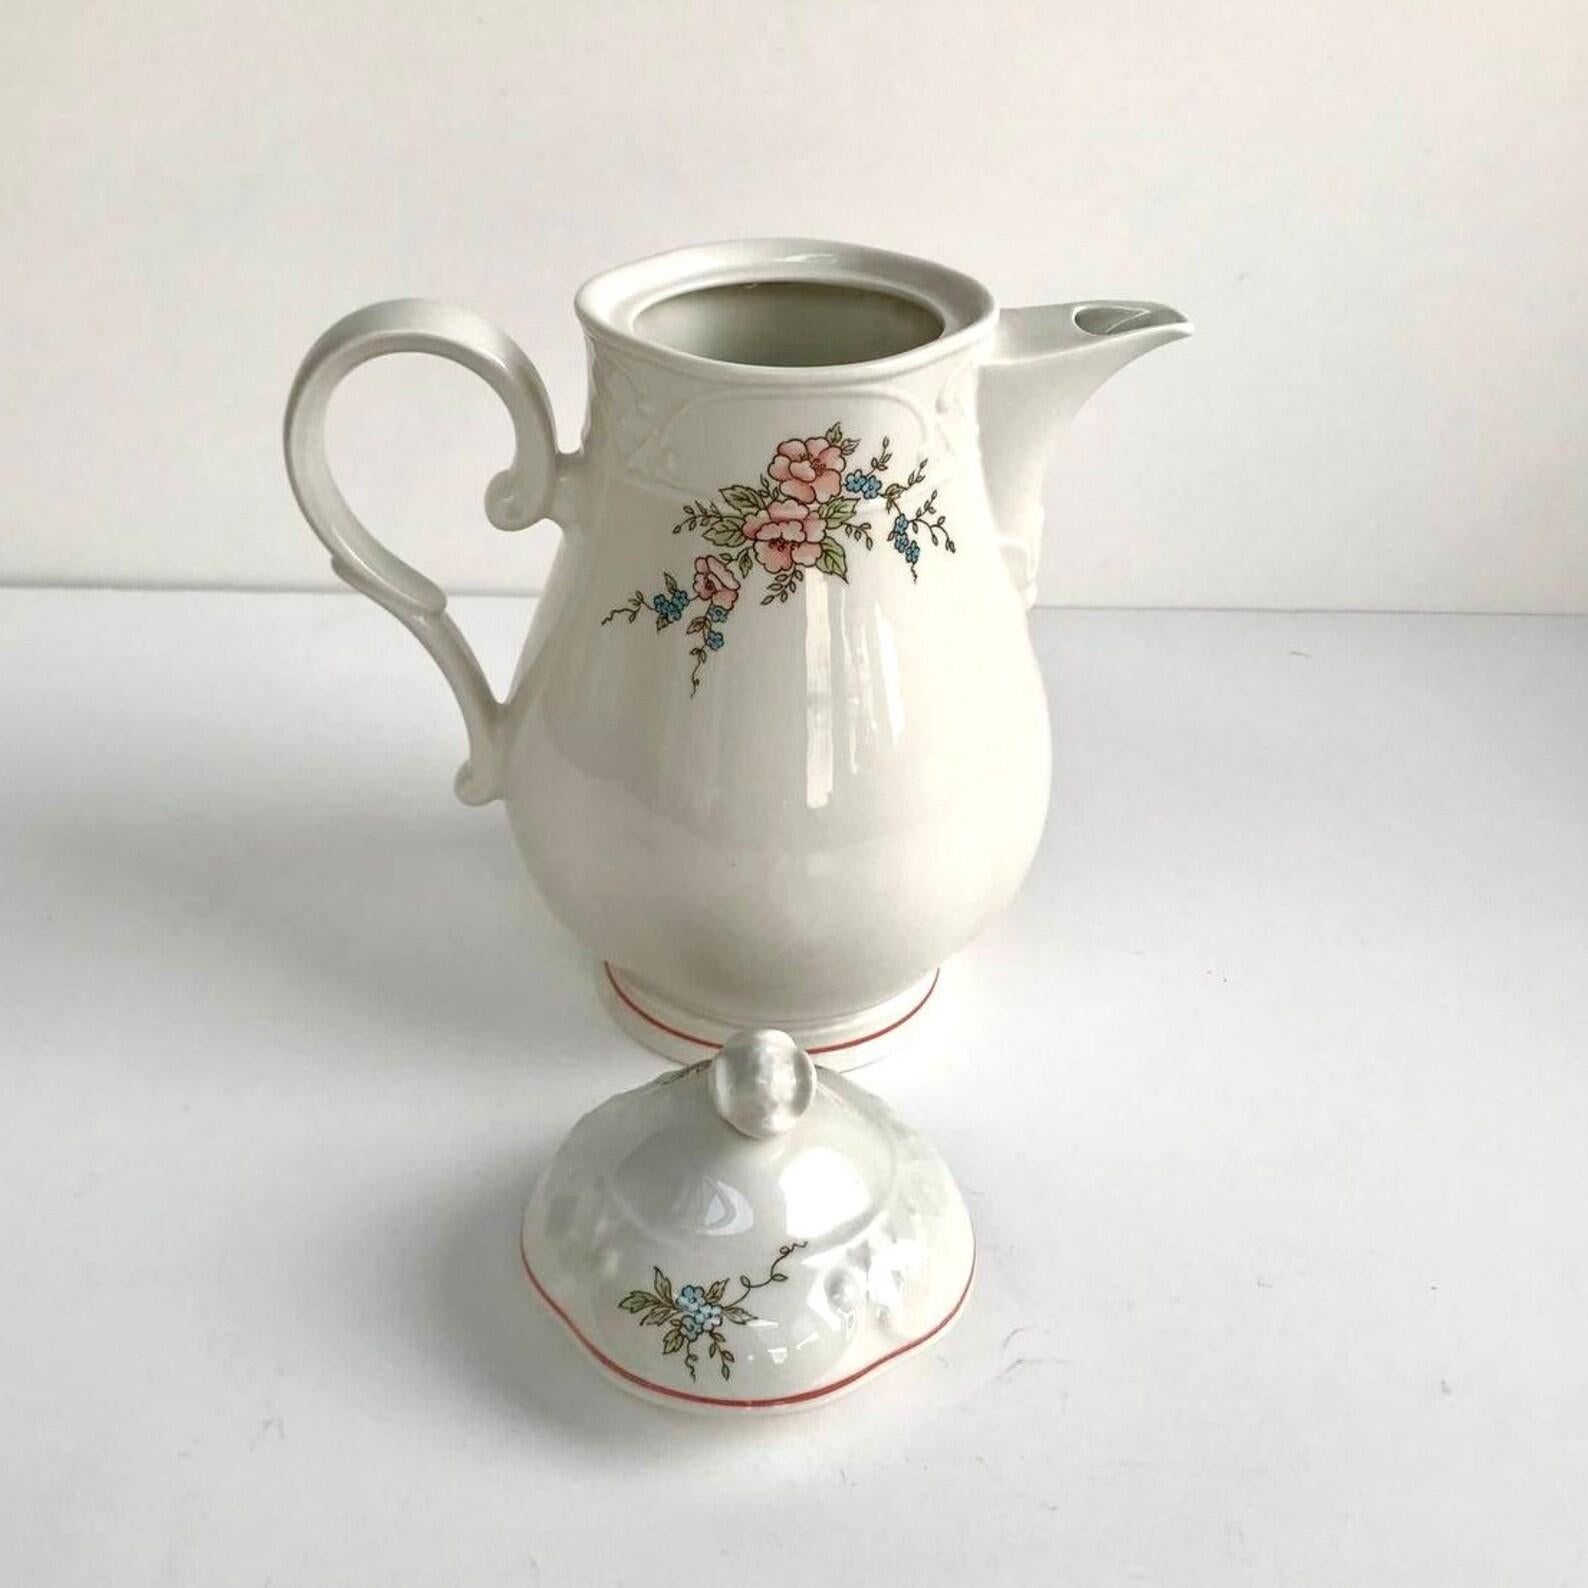 Vintage Villeroy & Boch Rosette Teapot  Porcelain Teapot with Flowers For Sale 4